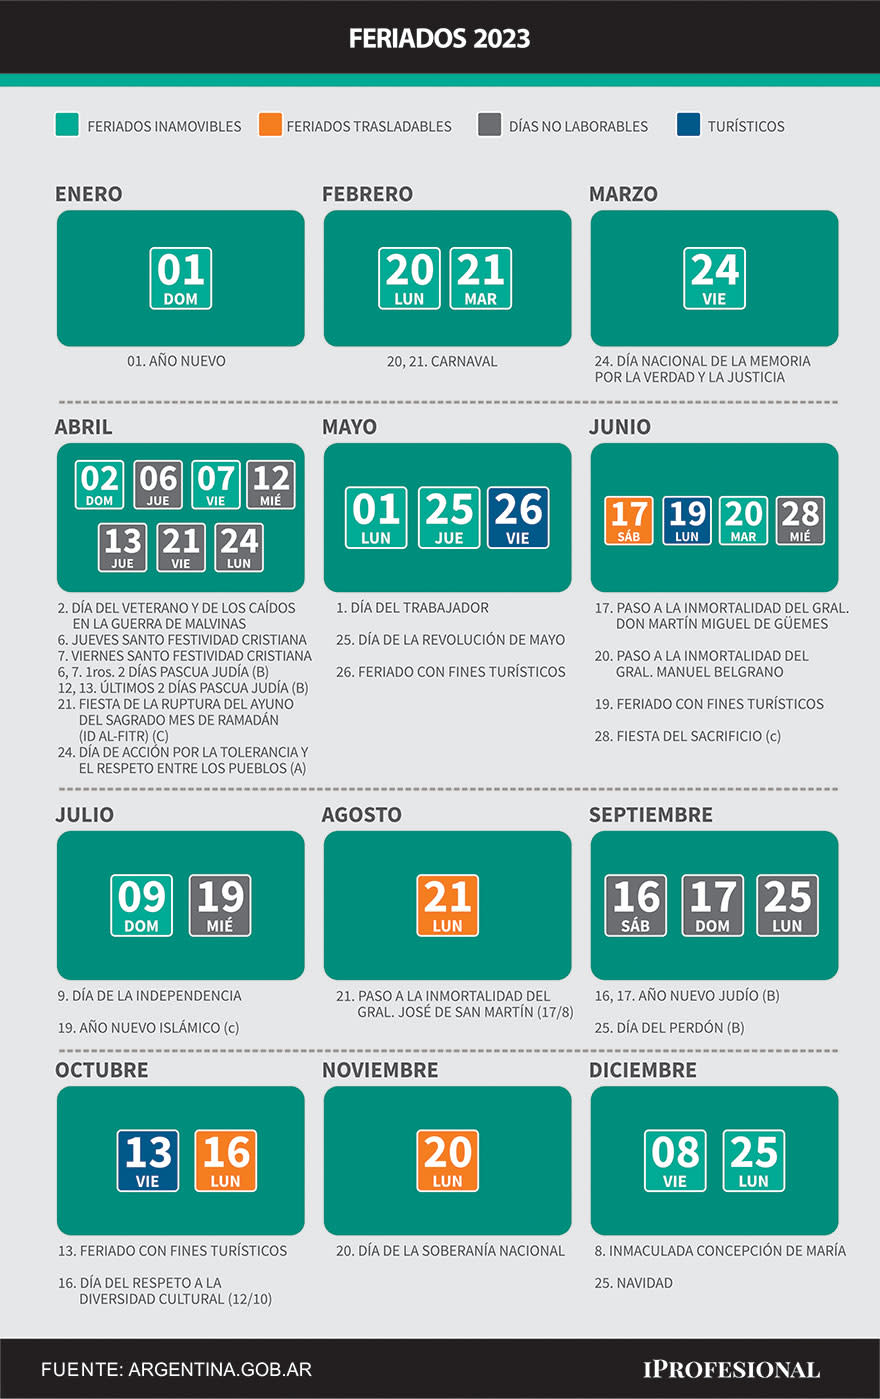 Todos los feriados y días no laborables de 2023 de acuerdo al calendario oficial del gobierno nacional